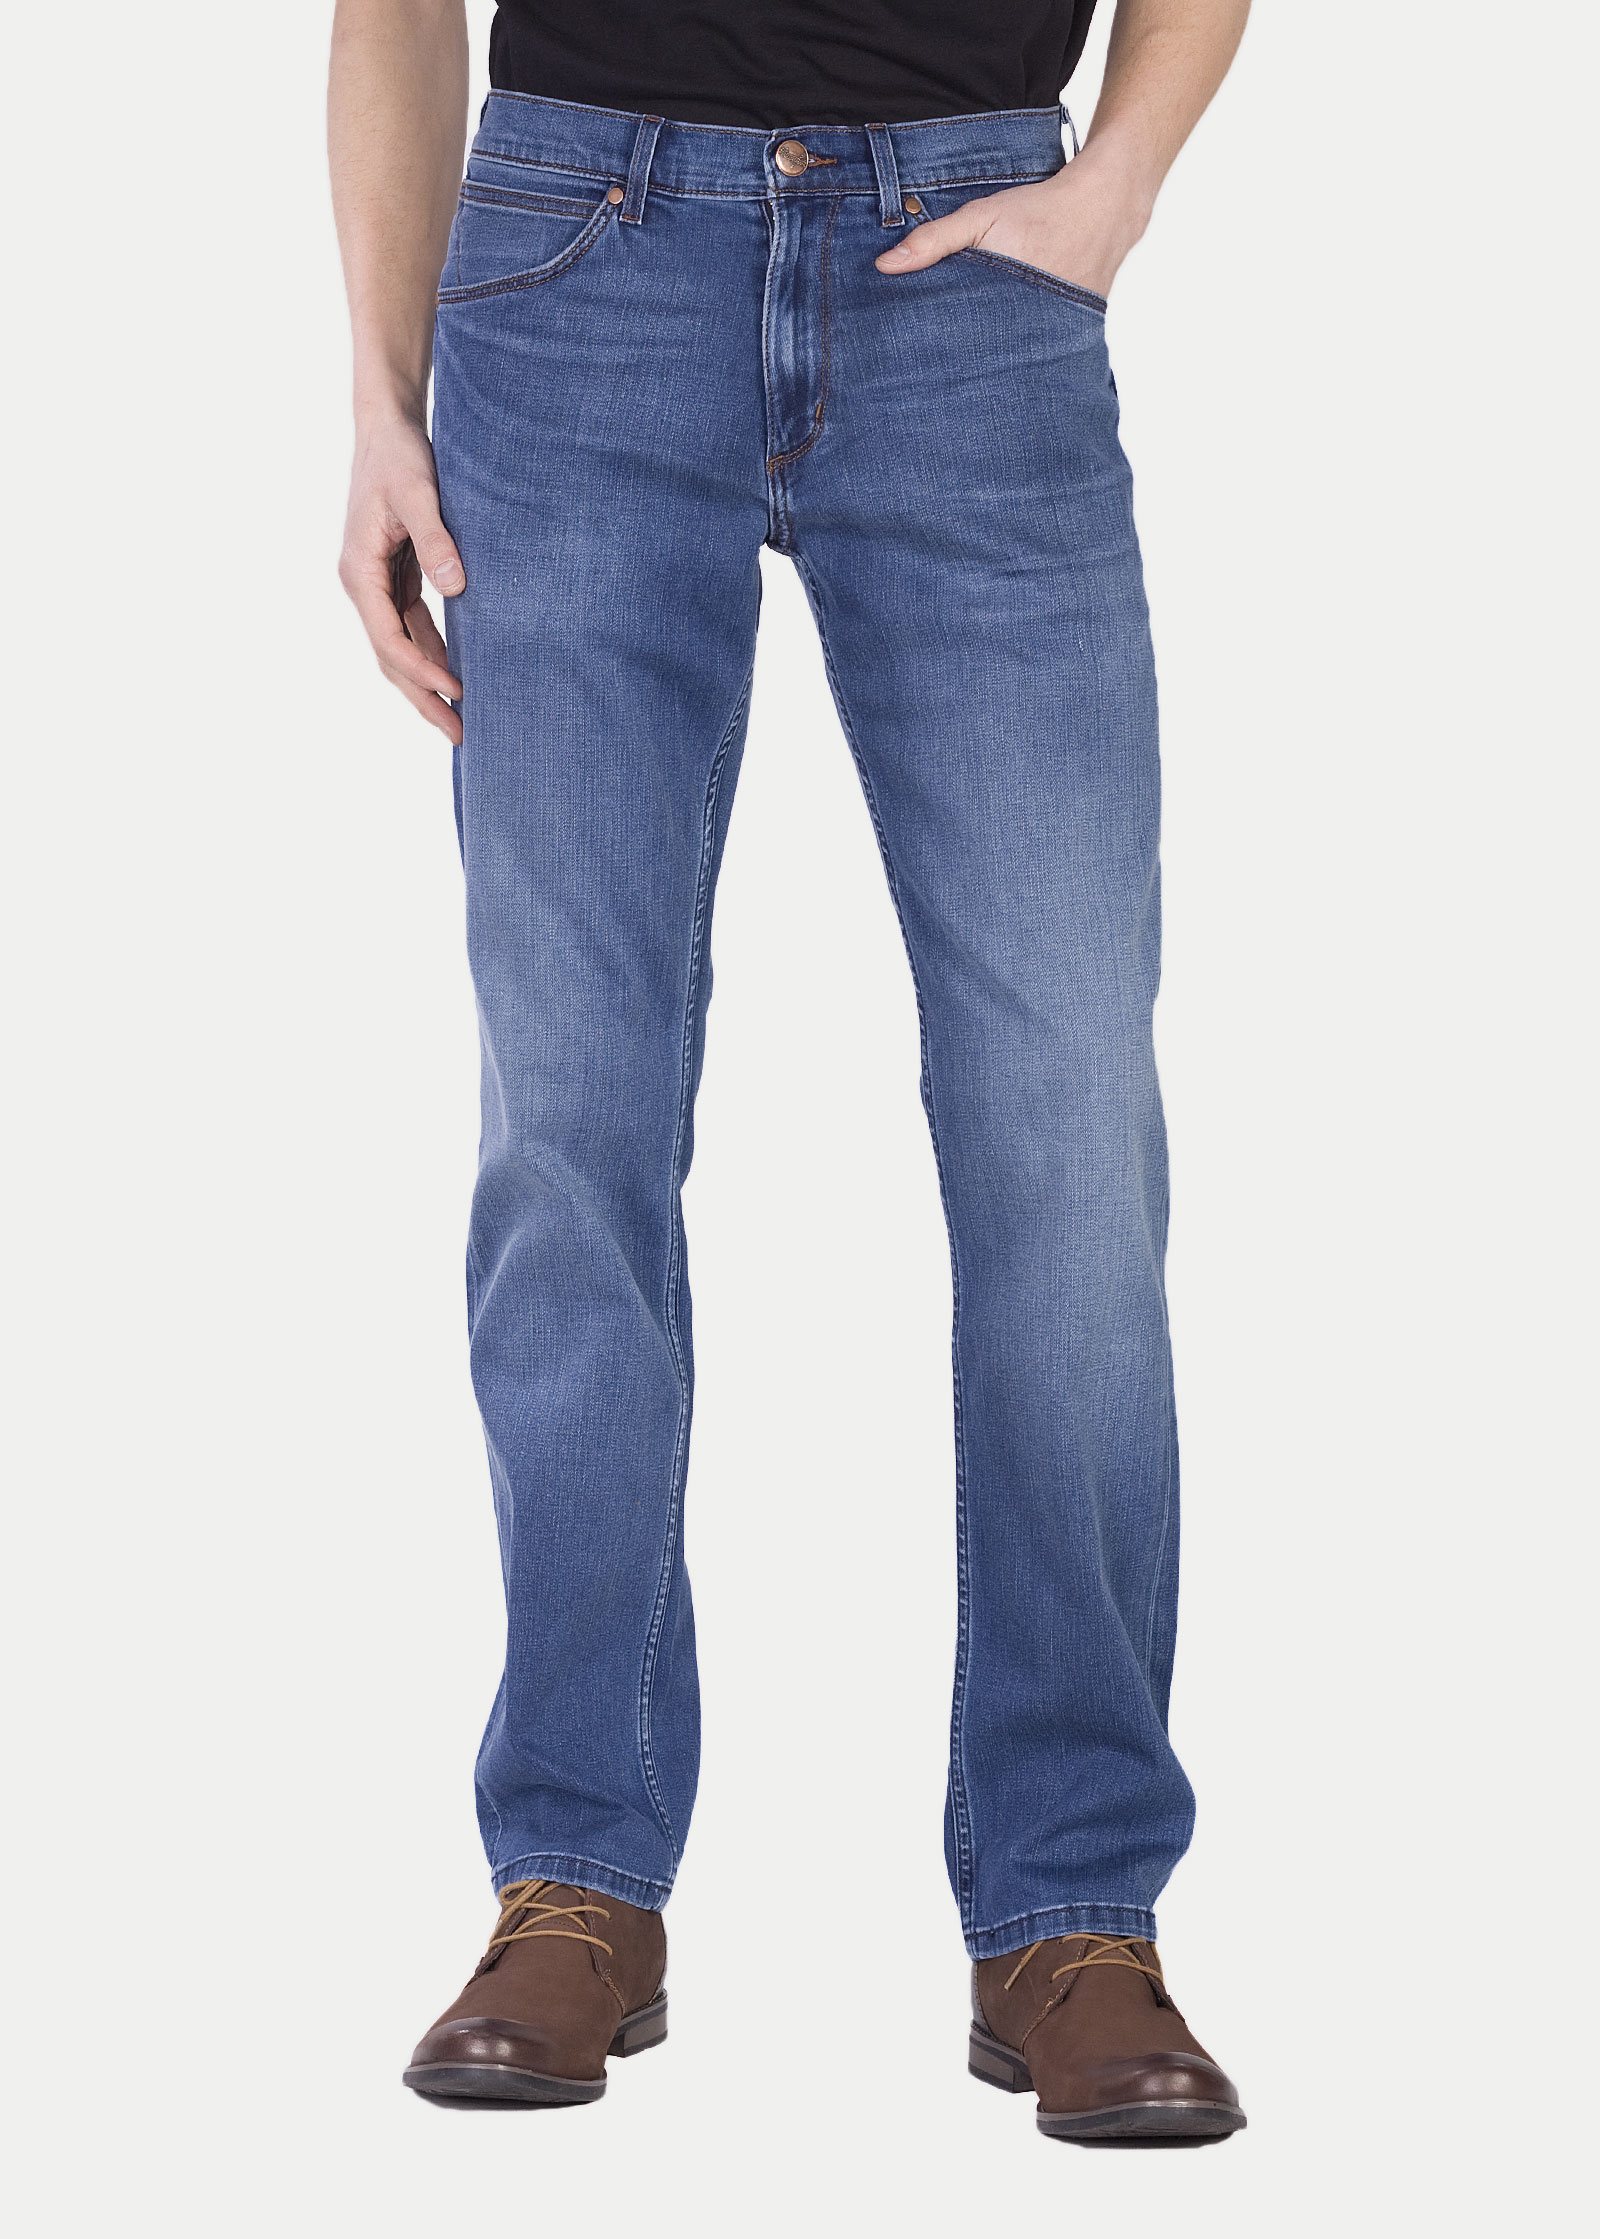 Джинсы мужские Wrangler Men Greensboro Jeans синие 44/34